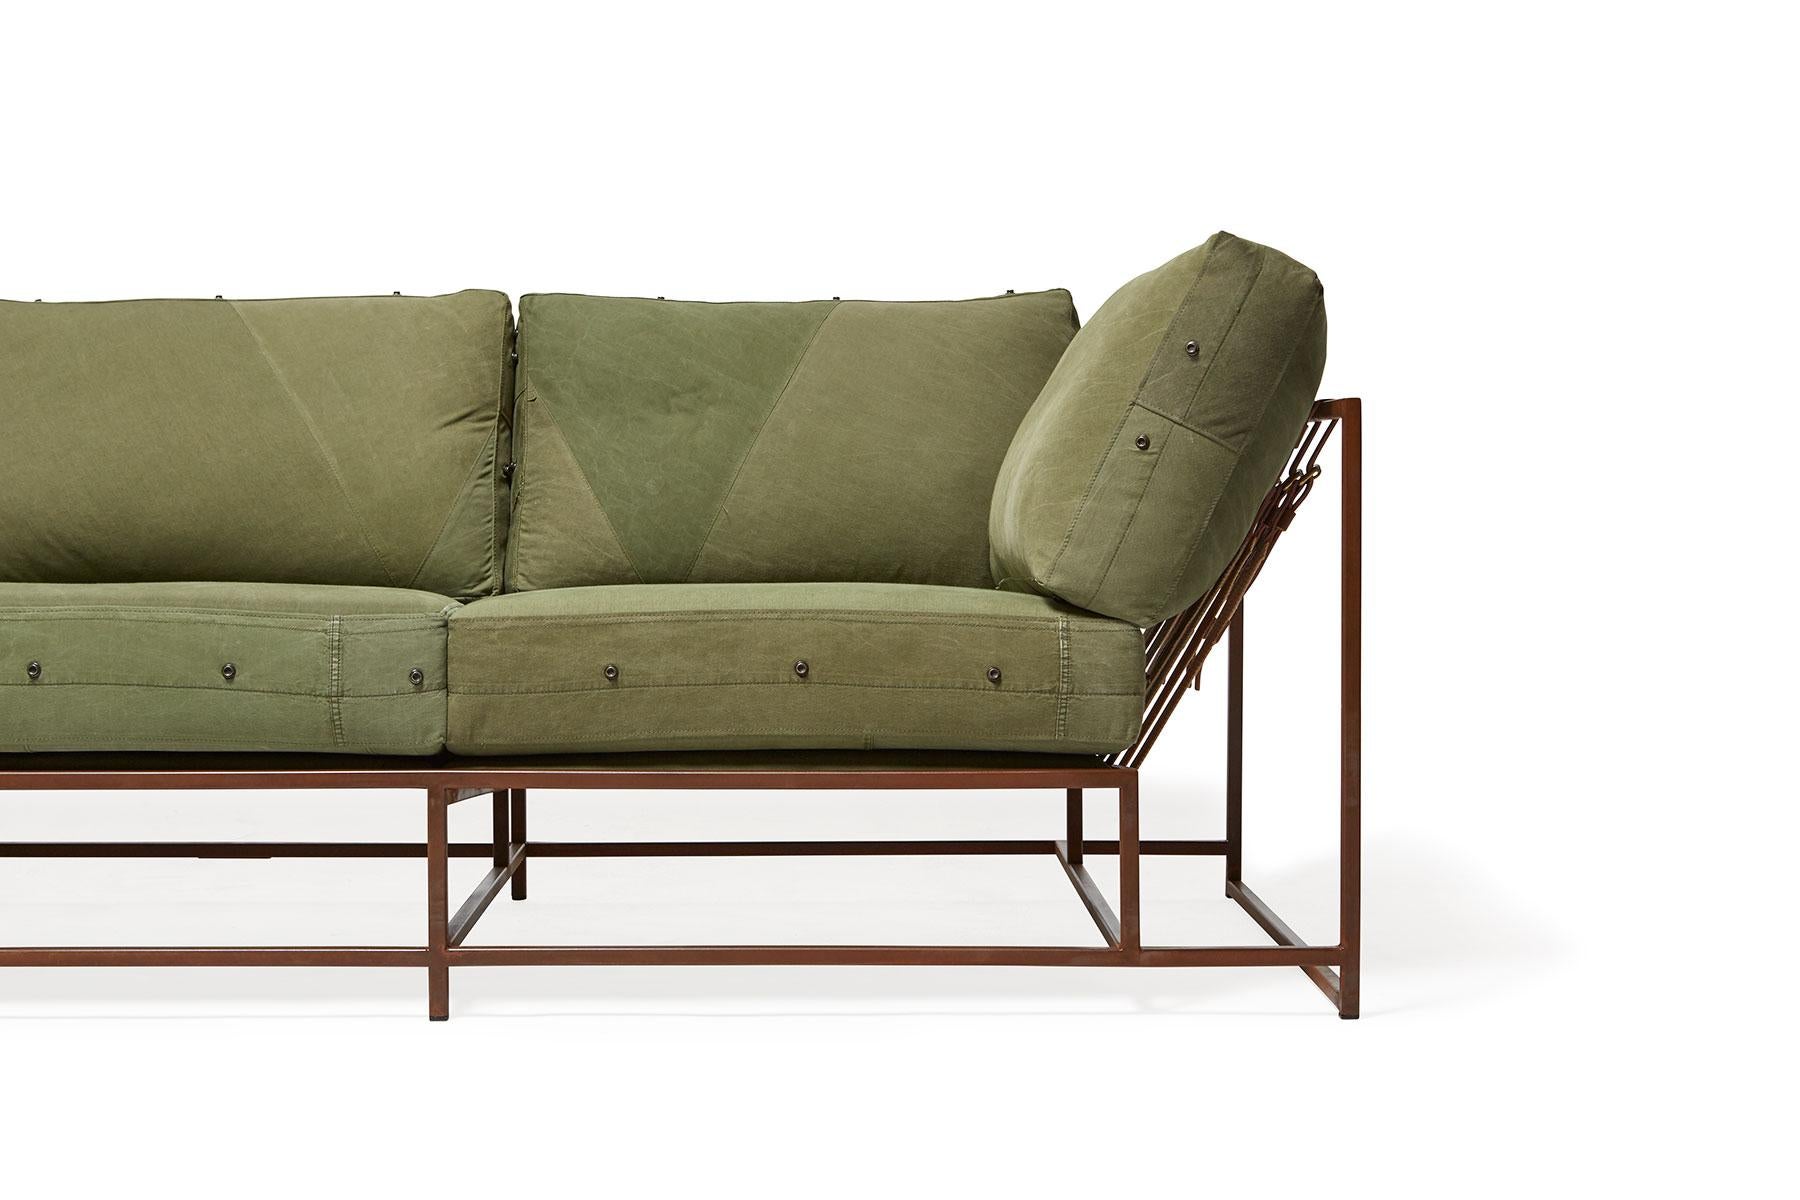 Conçu en 2011, ce canapé a été la première pièce de la collection Inheritance de Stephen Kenn. Partant d'une curiosité pour la façon dont les meubles étaient construits, la collection est le résultat d'une réimagination des sièges rembourrés